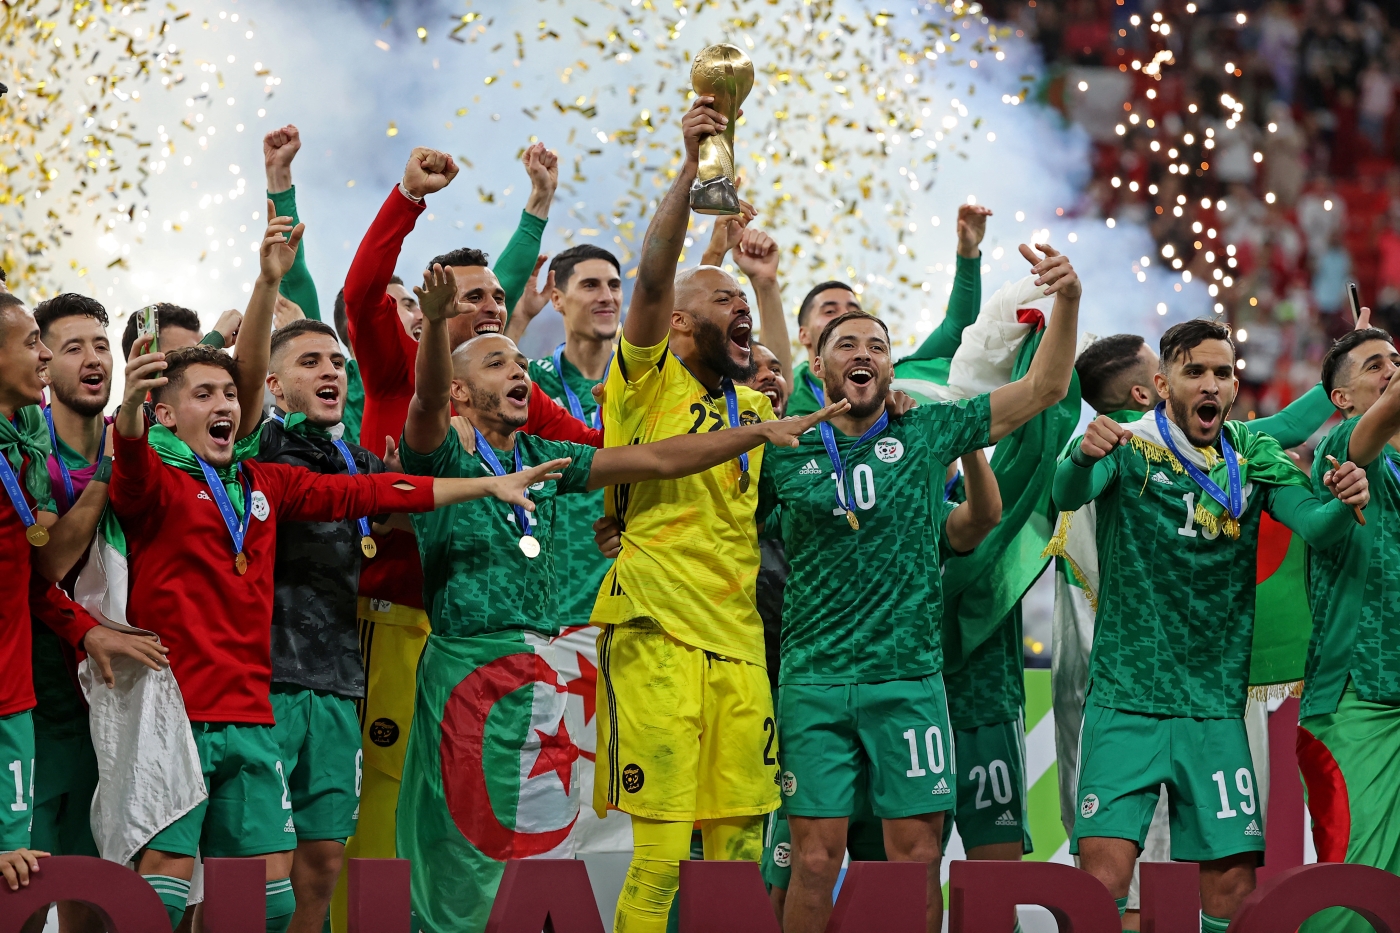 Jubilation online as Algeria wins Fifa Arab Cup trophy in Qatar